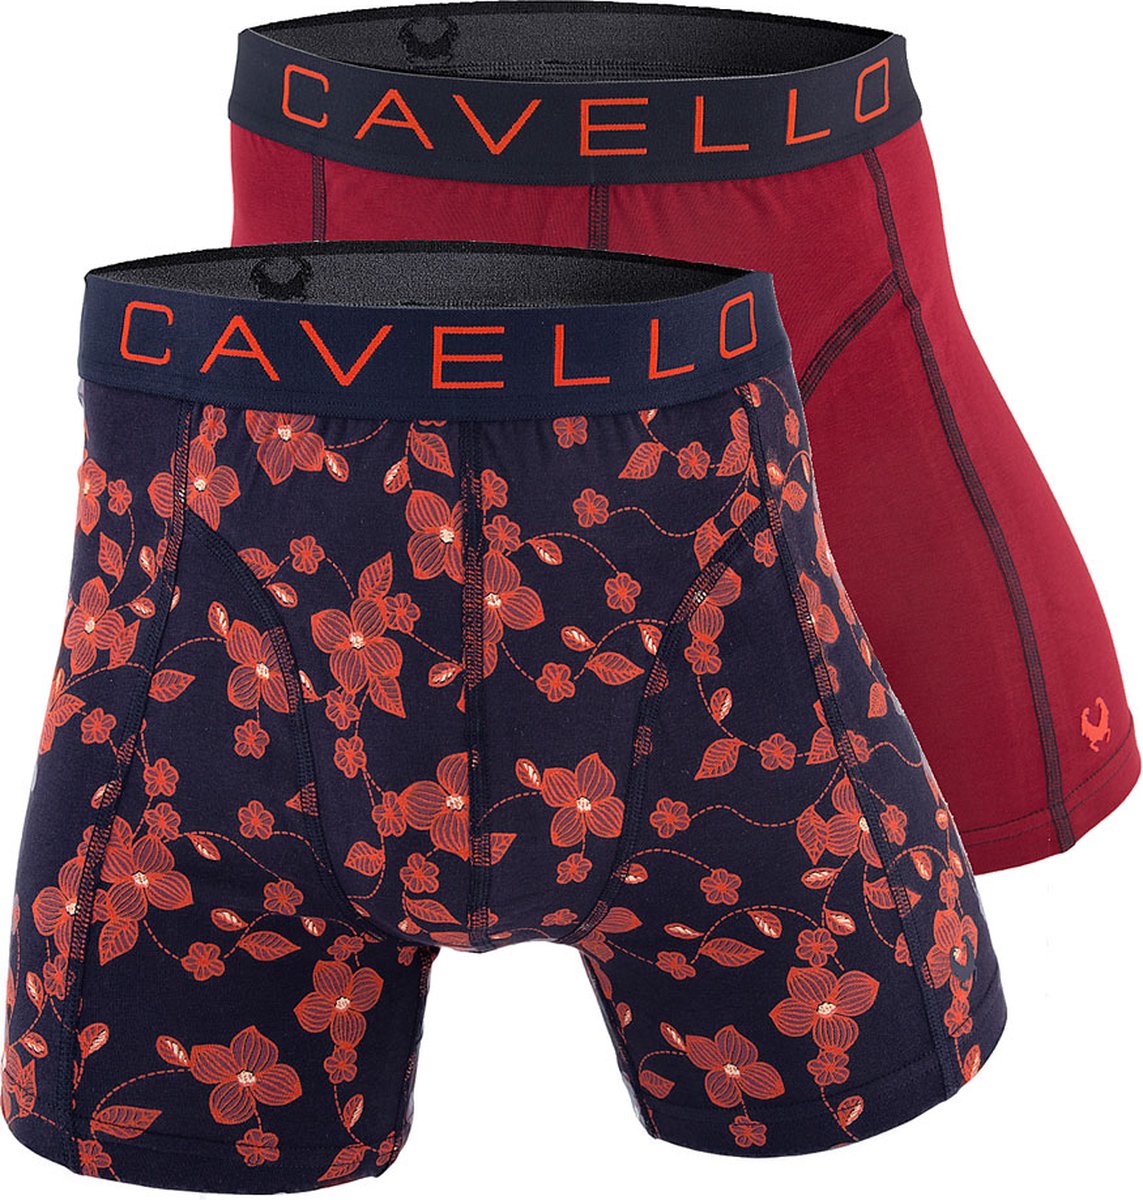 Cavello Boxershorts 2-pack Bordeaux